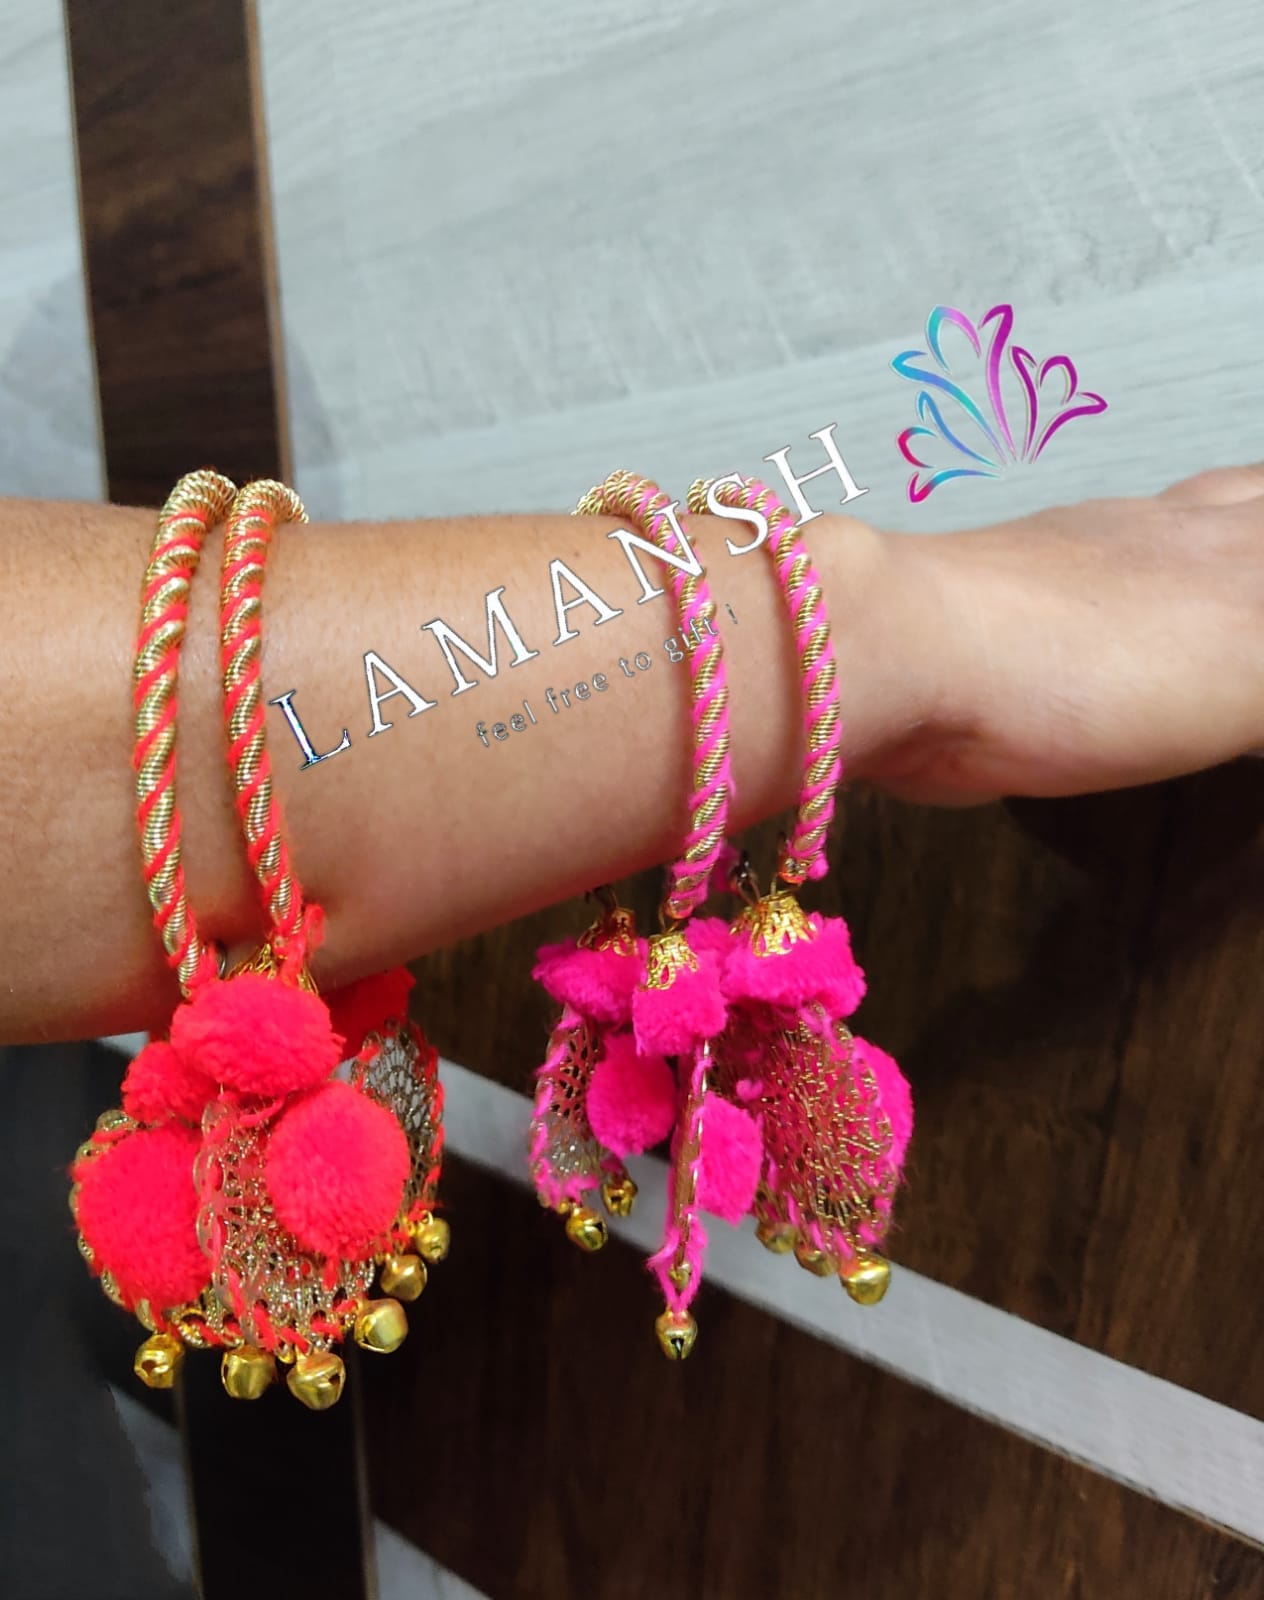 LAMANSH Floral 🌺 Giveaways Multicolor / Set of 20 Bangles LAMANSH® Set of 20 Pom Pom Flower Bracelets, Kade, Bangles, Hathphool, for Bridesmaid Giveaways / Best wedding favors return gifts